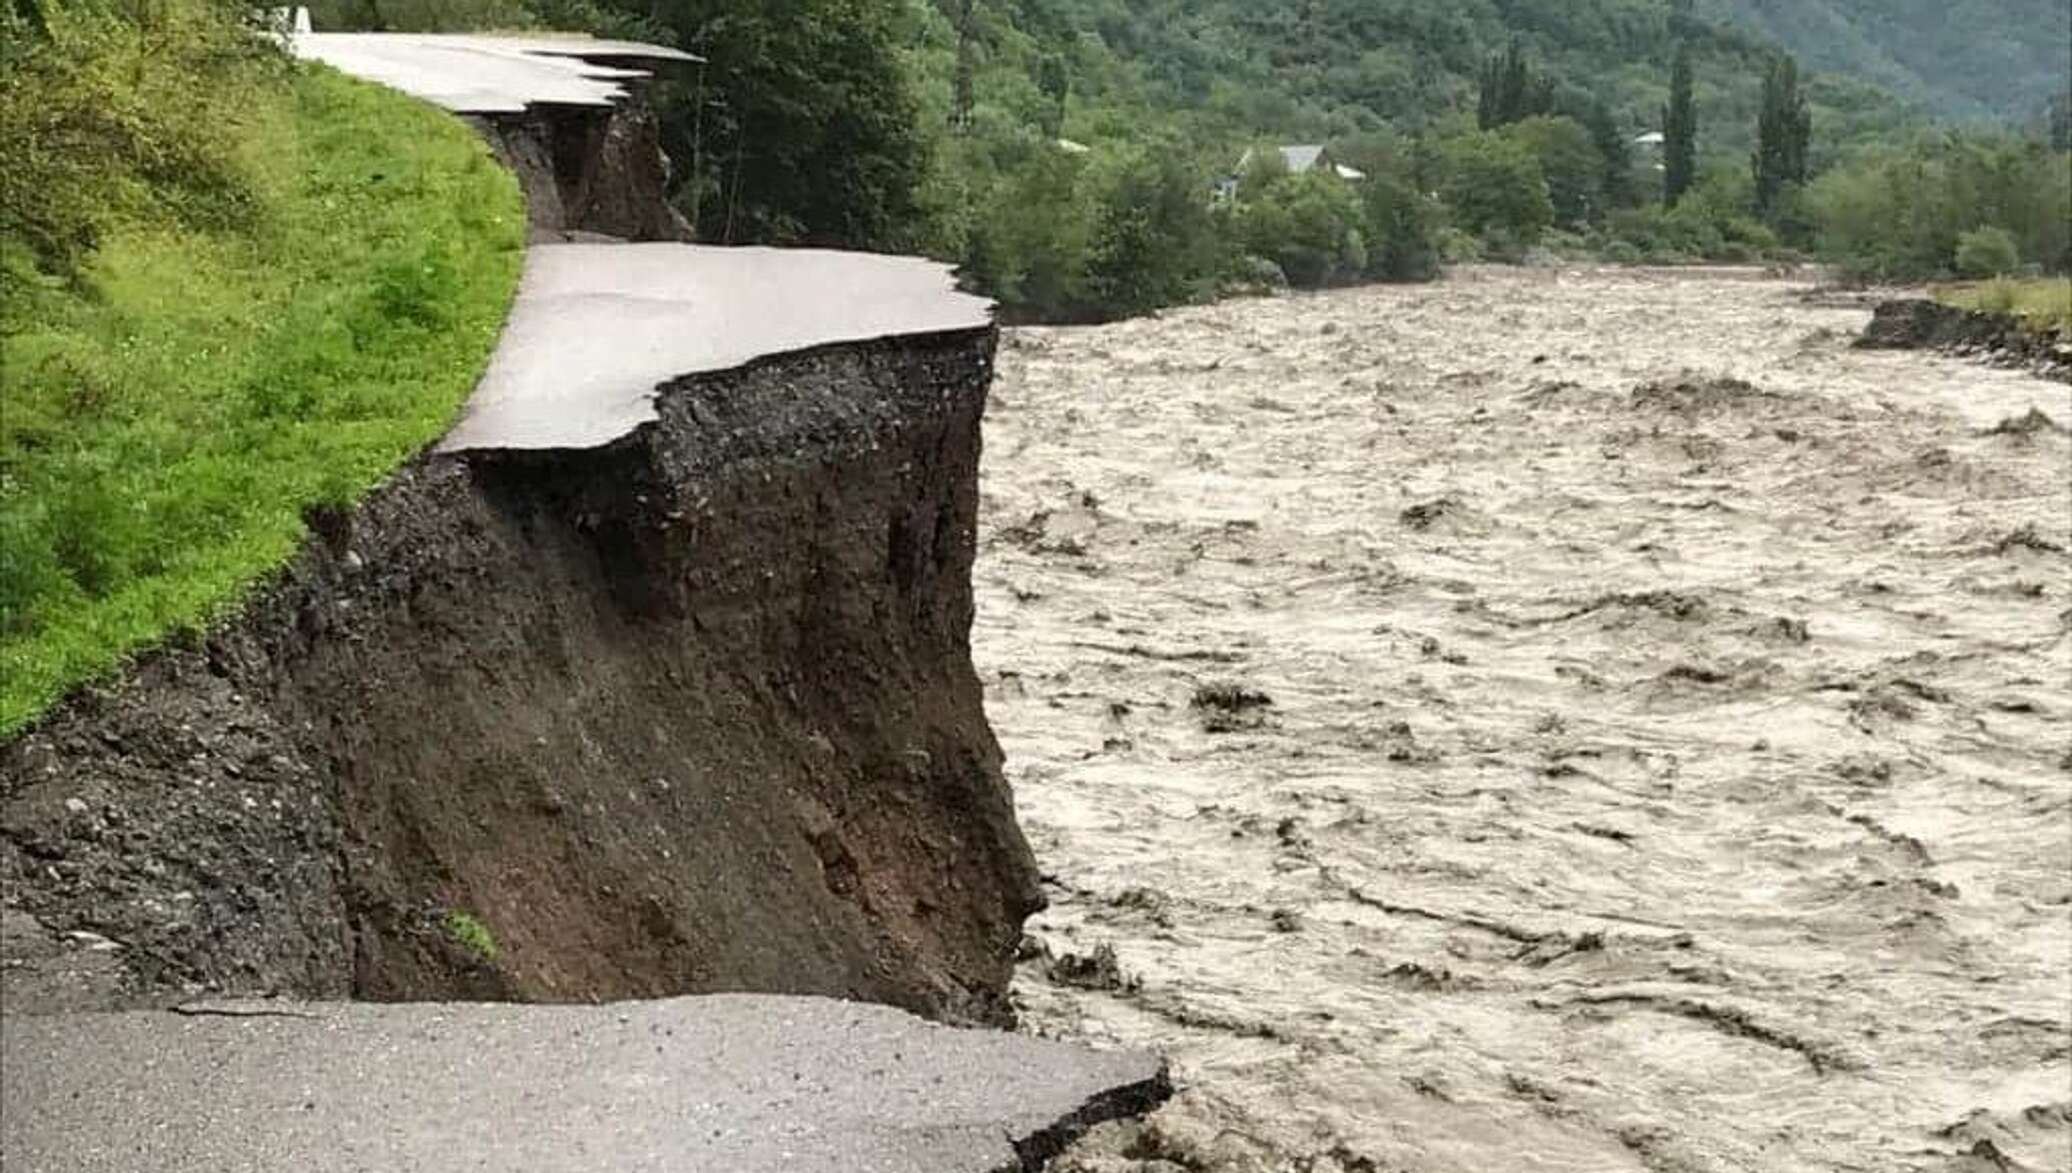 грузия землетрясение